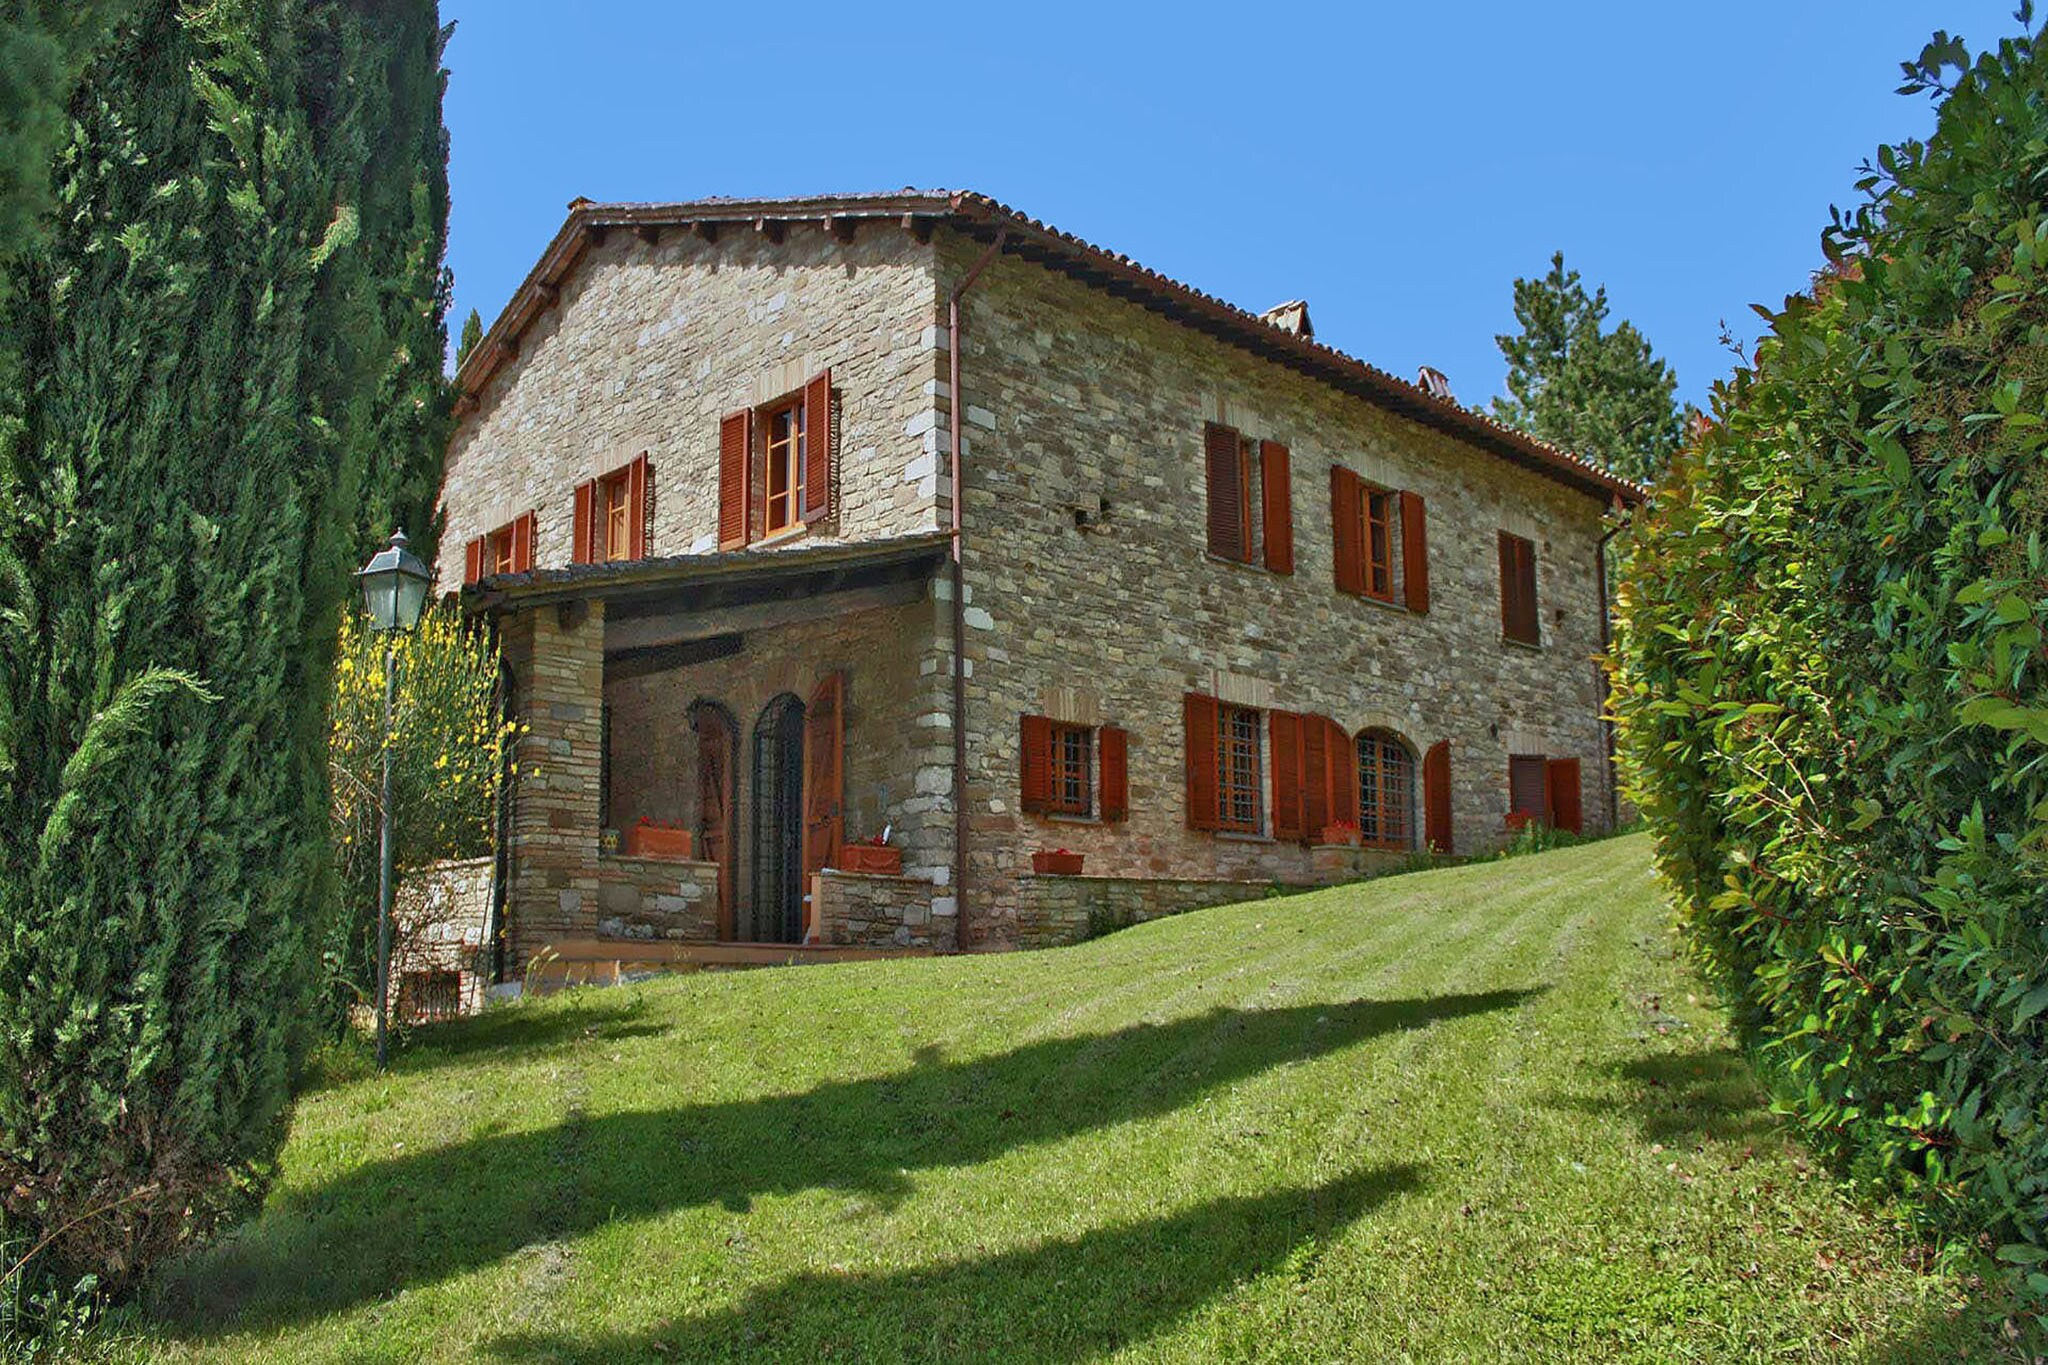 Moderne Villa 6 km entfernt von Assisi, Umbrien in Hügeln